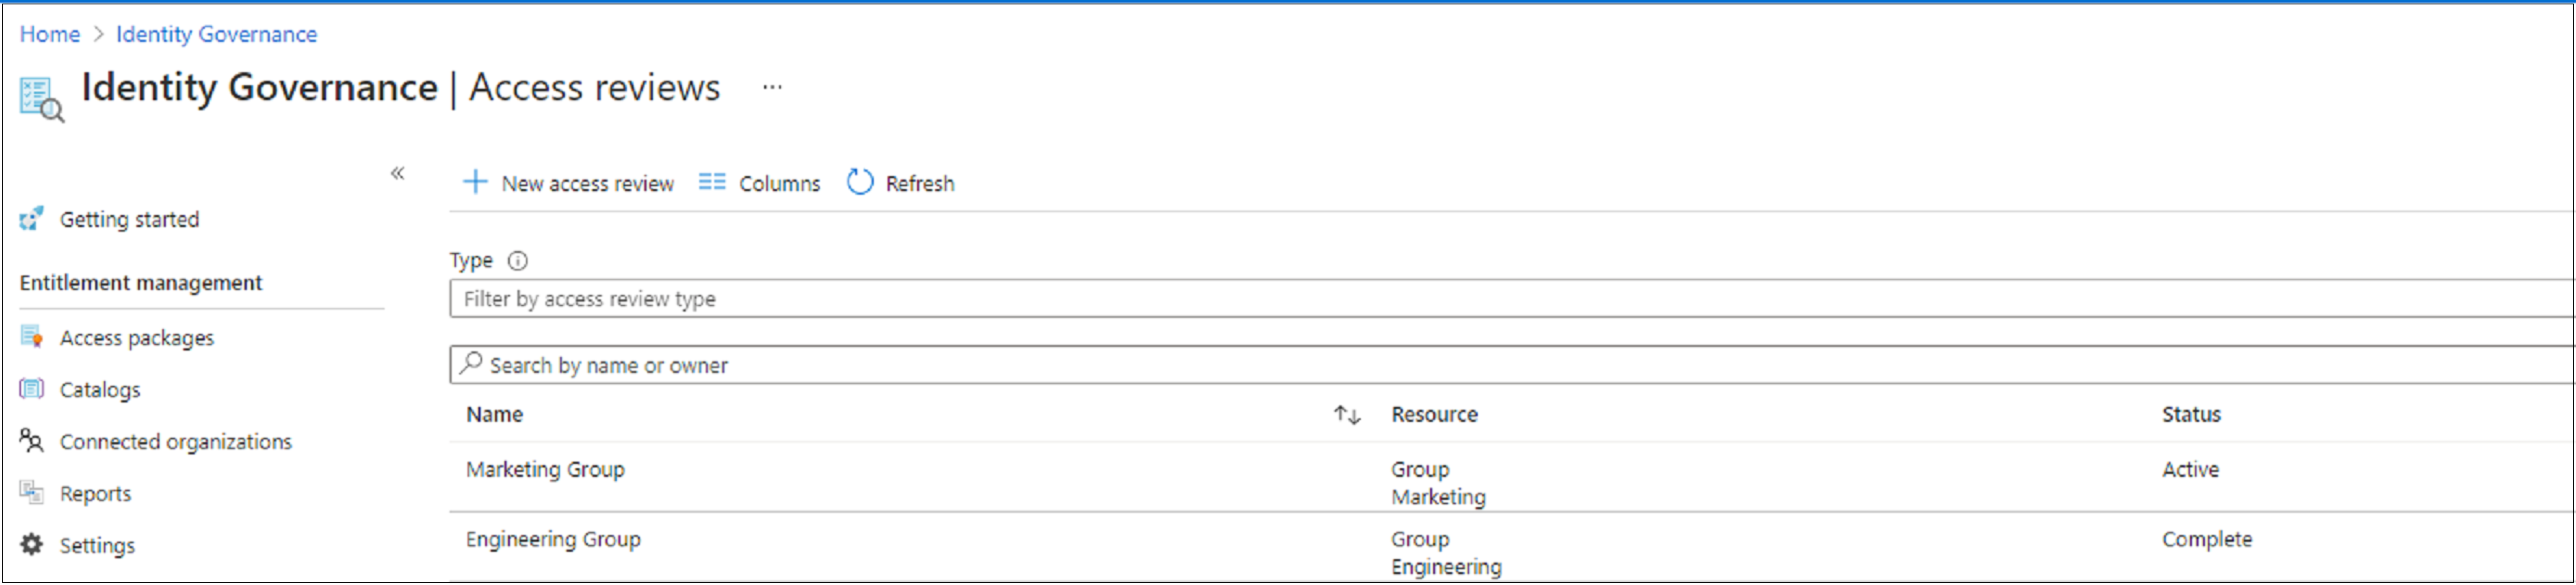 Screenshot che mostra un elenco di verifiche di accesso e il relativo stato.